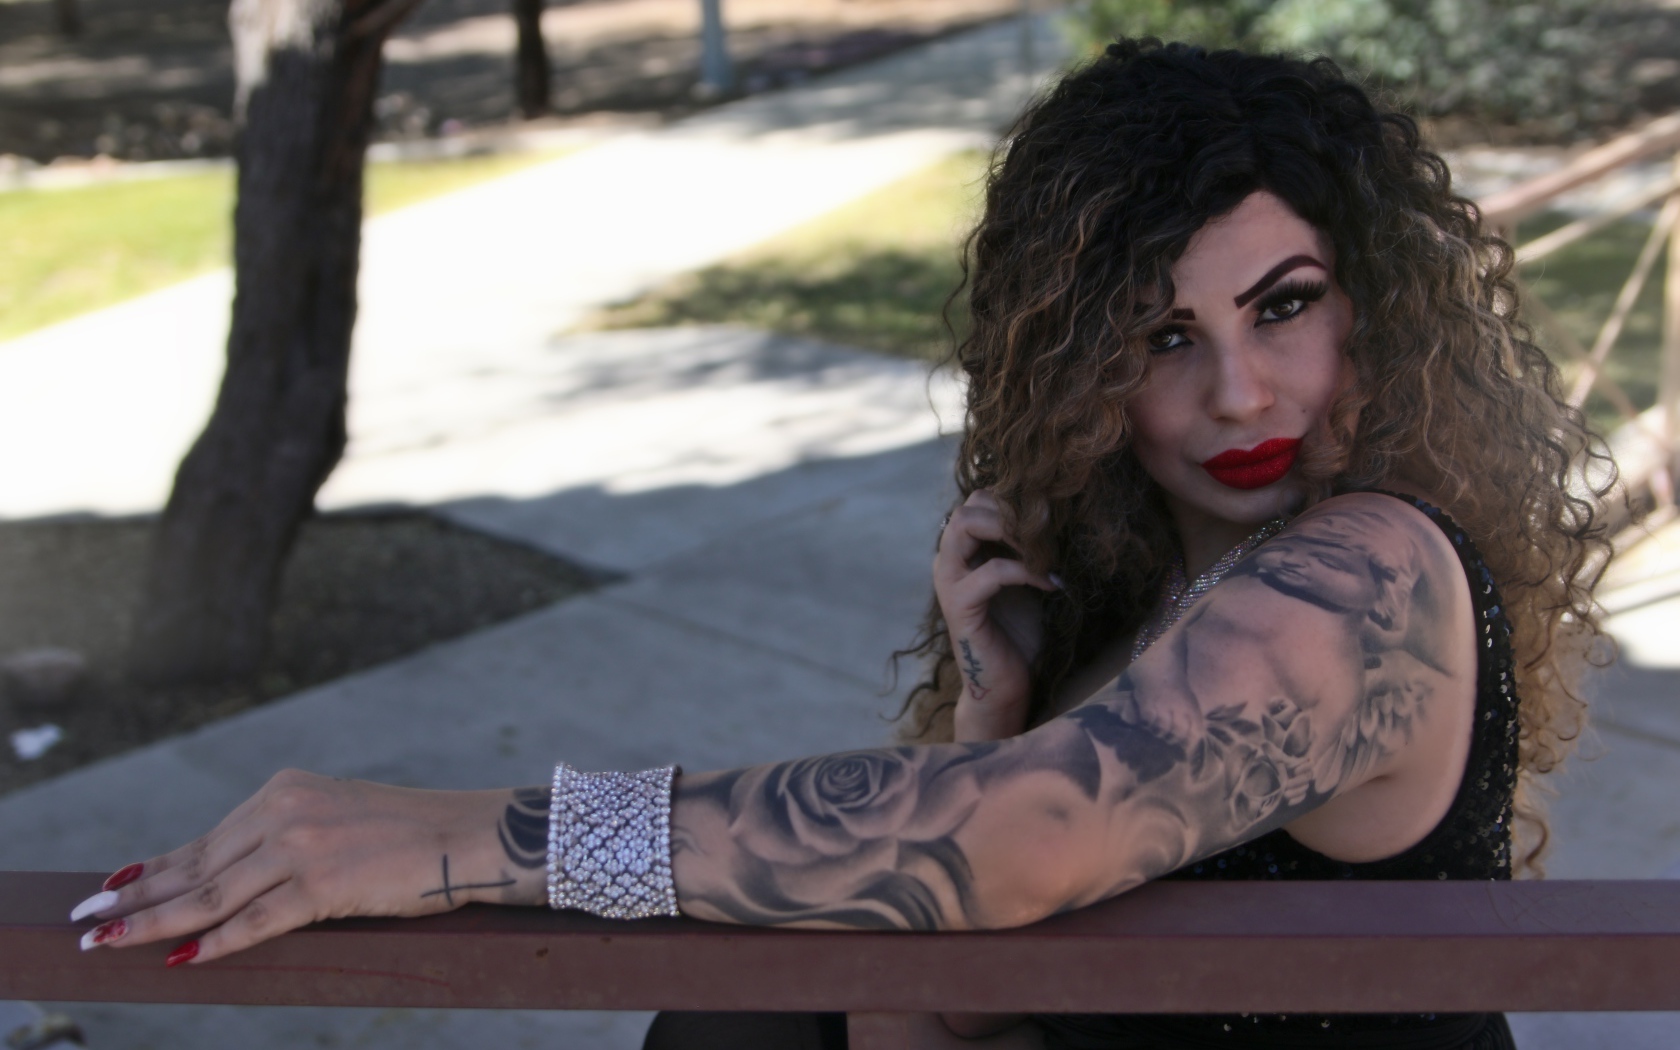 Красивая девушка с татуировками на руках сидит на лавке 